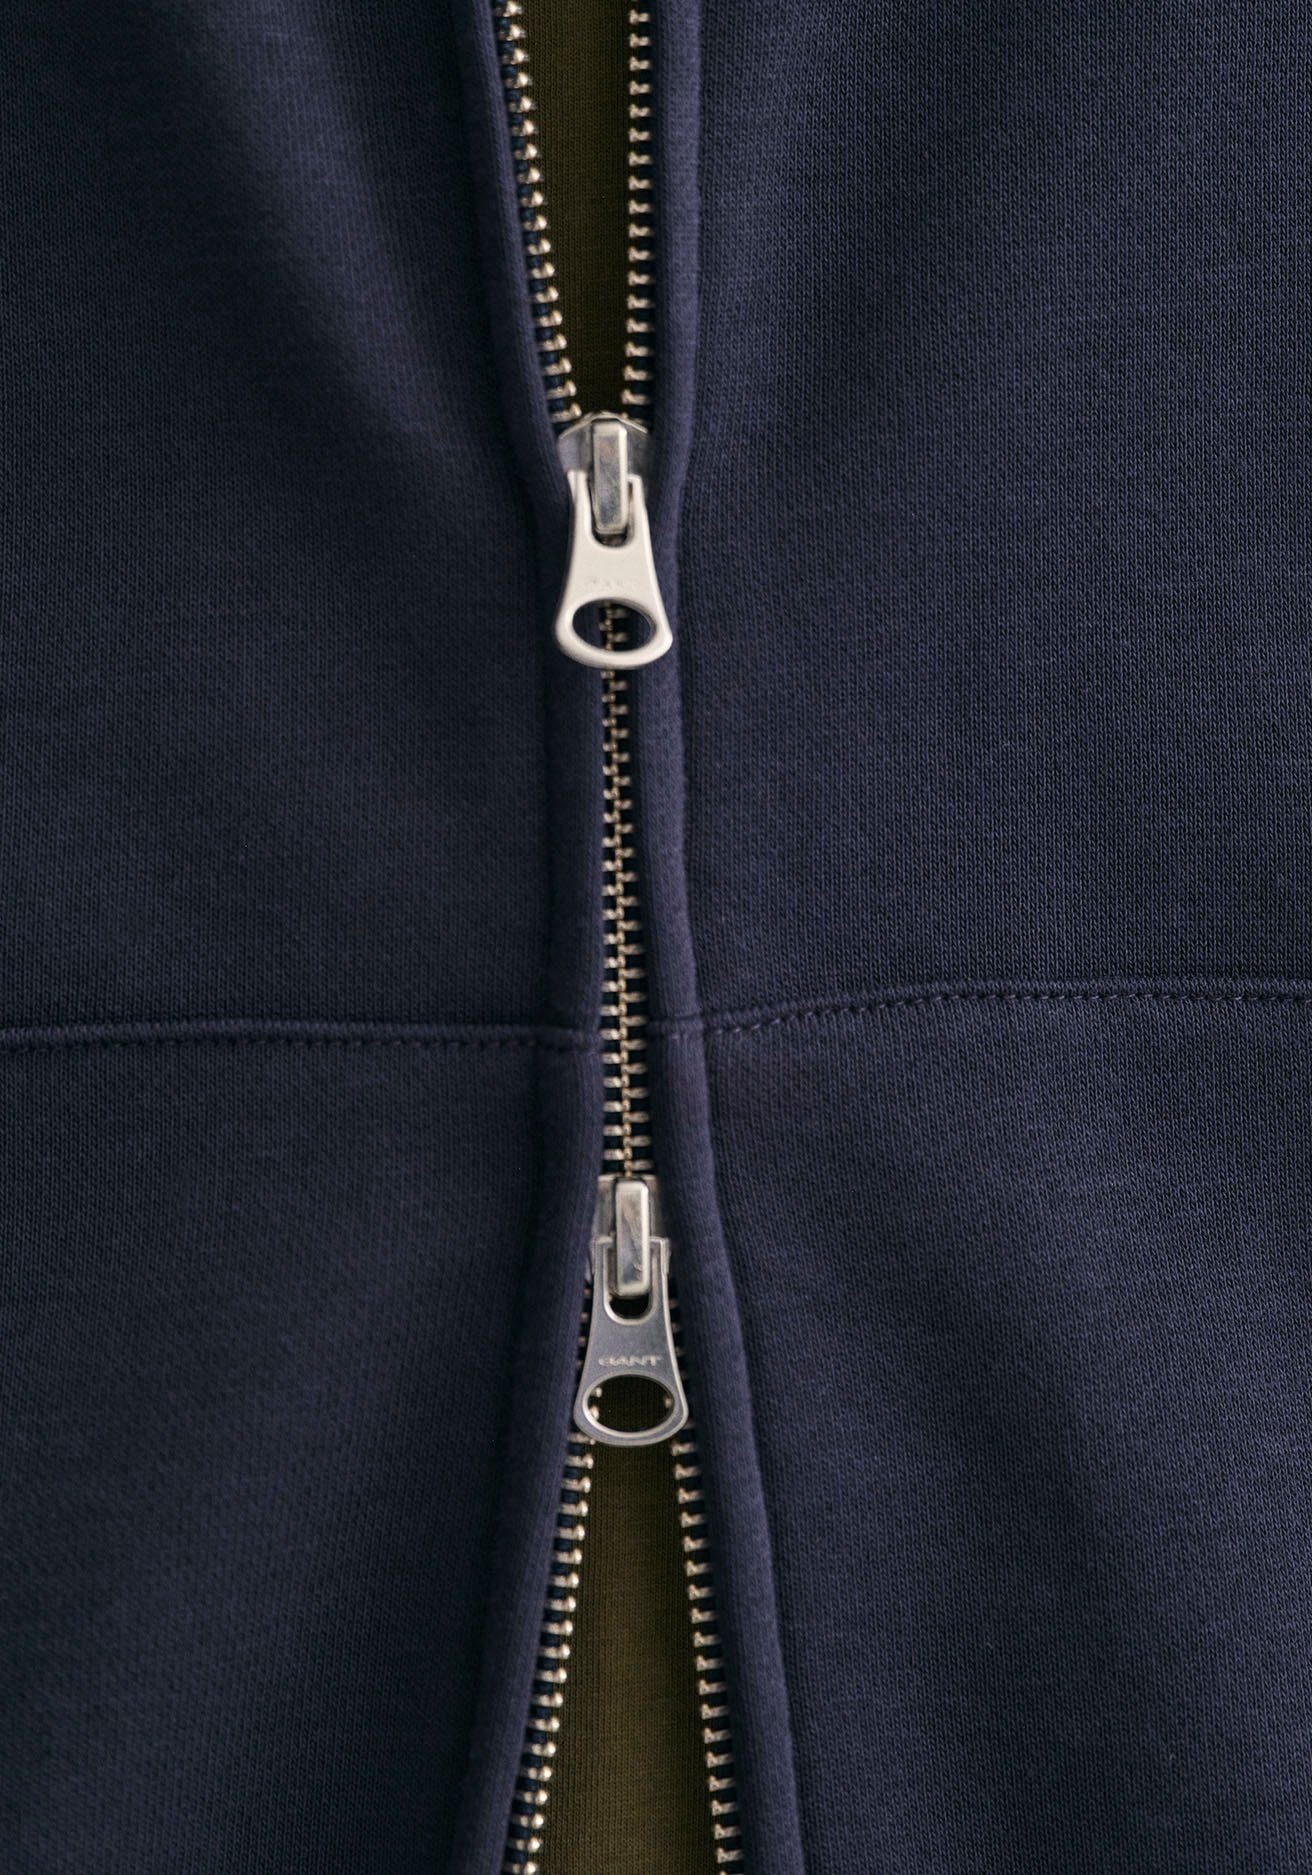 FULL evening ZIP SHIELD Sweatshirt der Logostickerei auf SWEAT mit blue Brust Gant REG